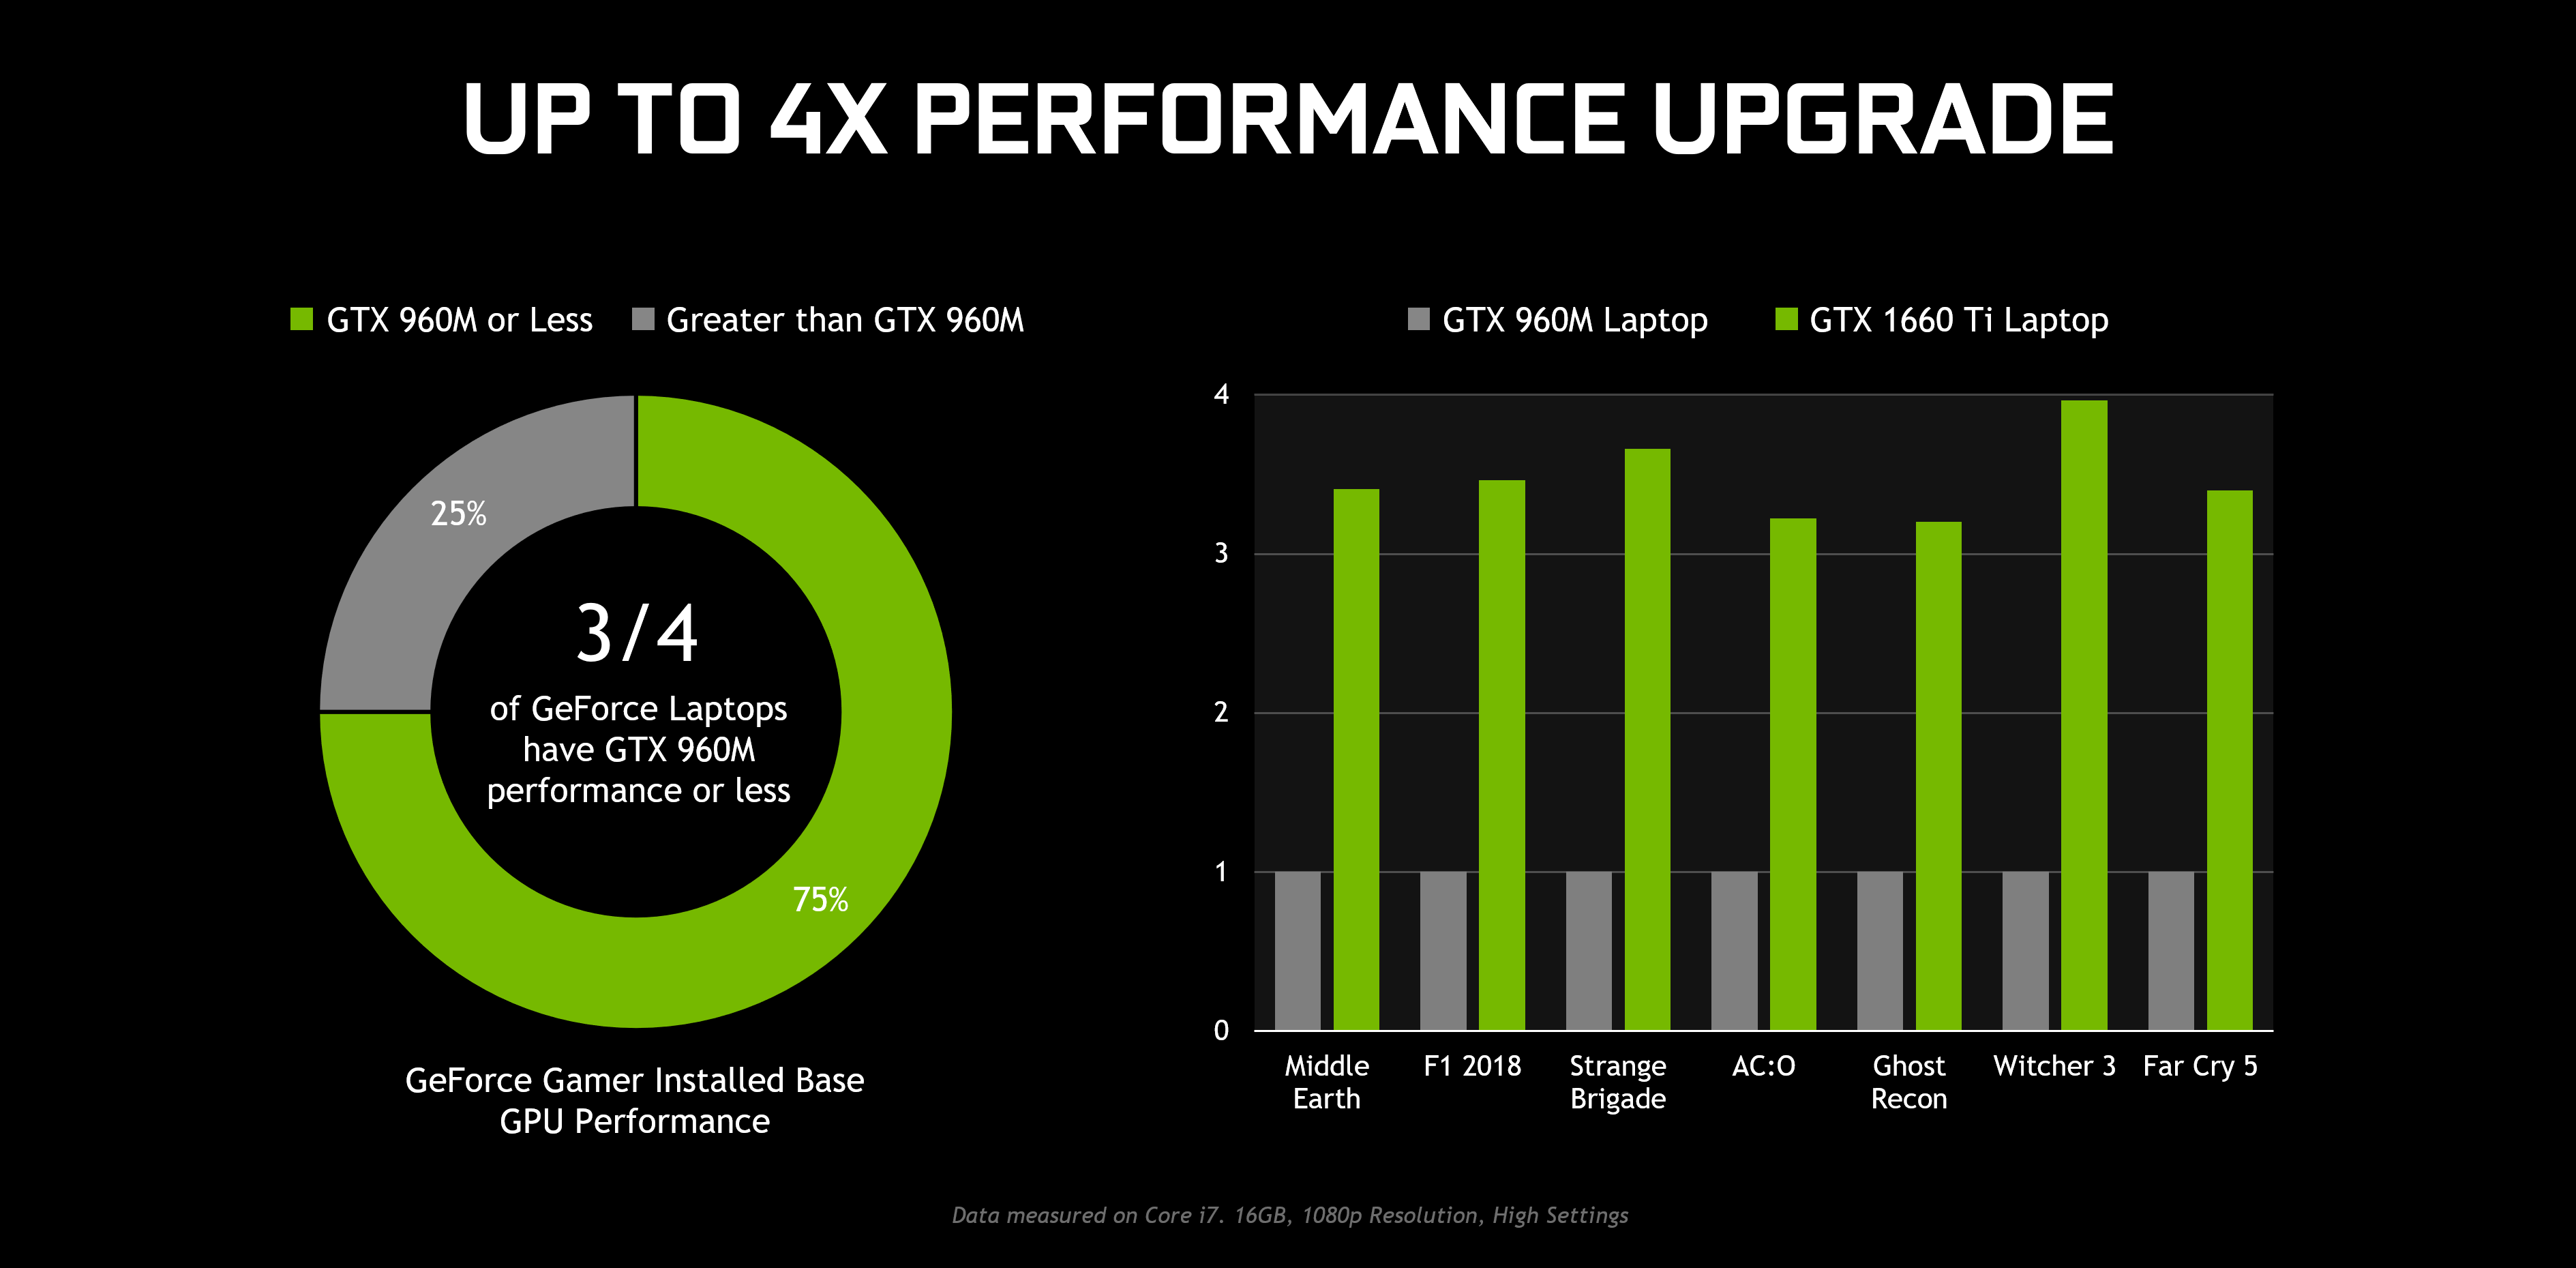 GeForce GTX 16-Series Laptops, Starting 